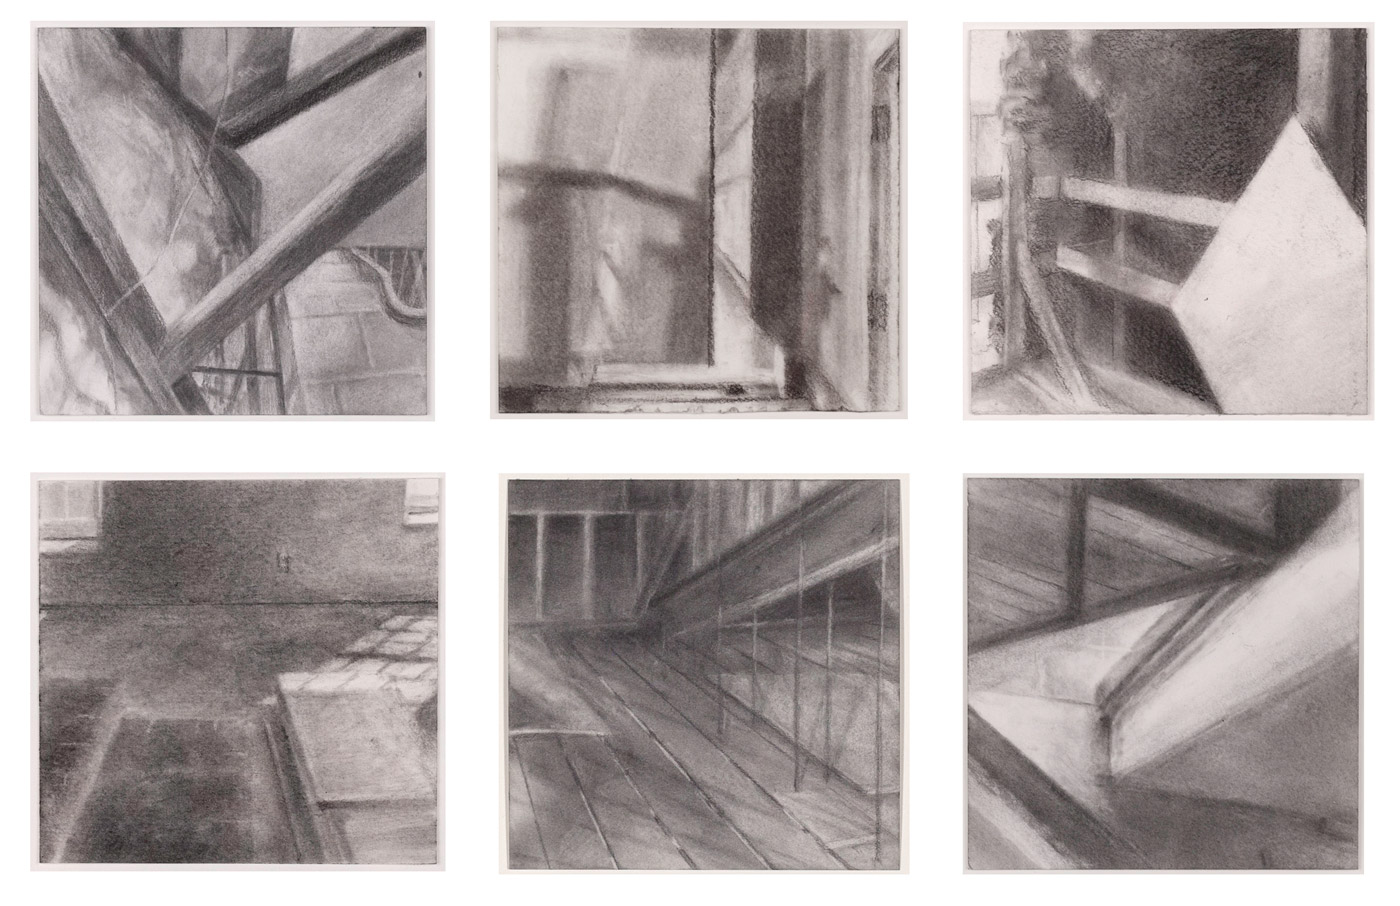   Feigenbaum Building Studies,  2016 graphite powder on paper, 4 x 4 in each 